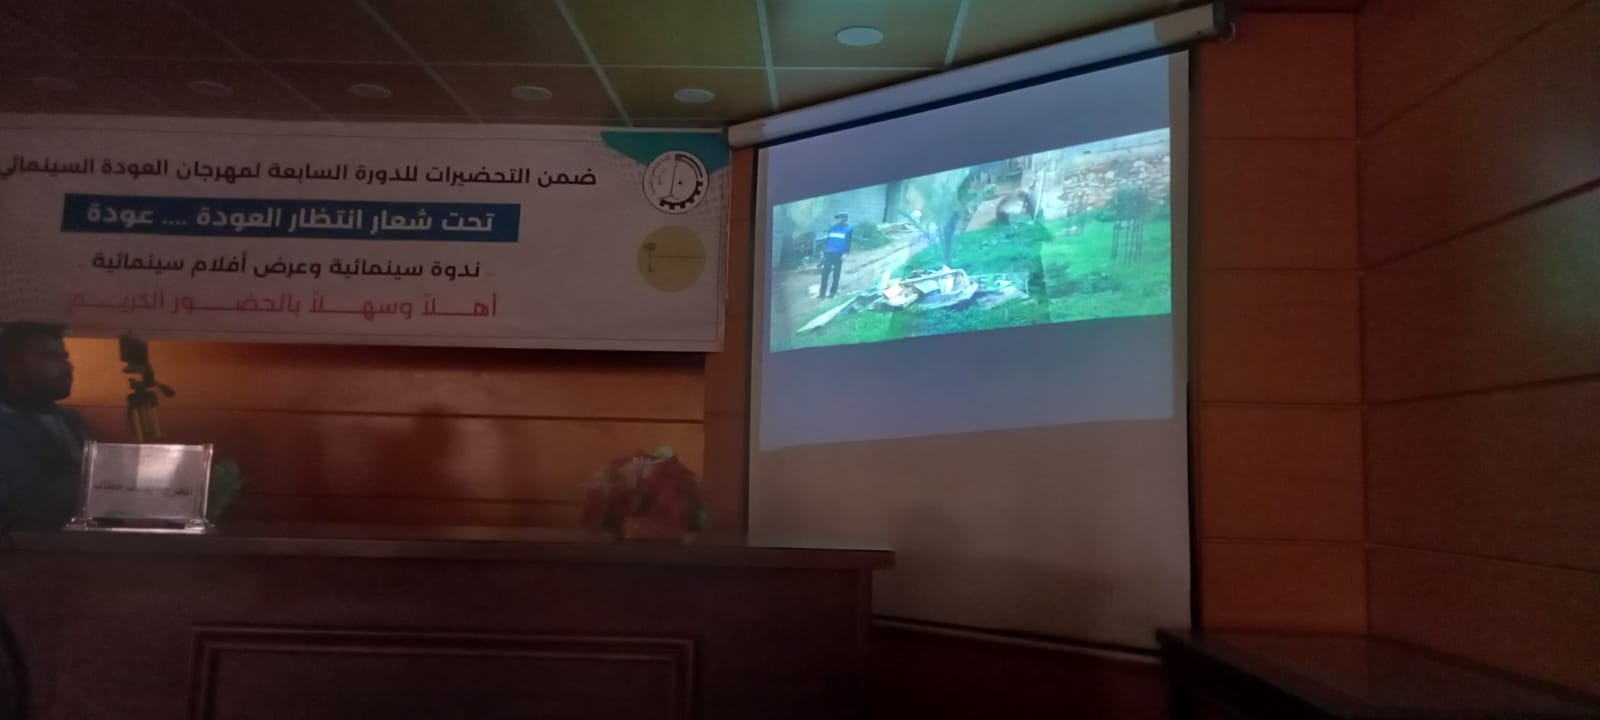 شاهد: كلية فلسطين التقنية وملتقى الفيلم الفلسطيني ينظمان عرضاً لأفلام سينمائية